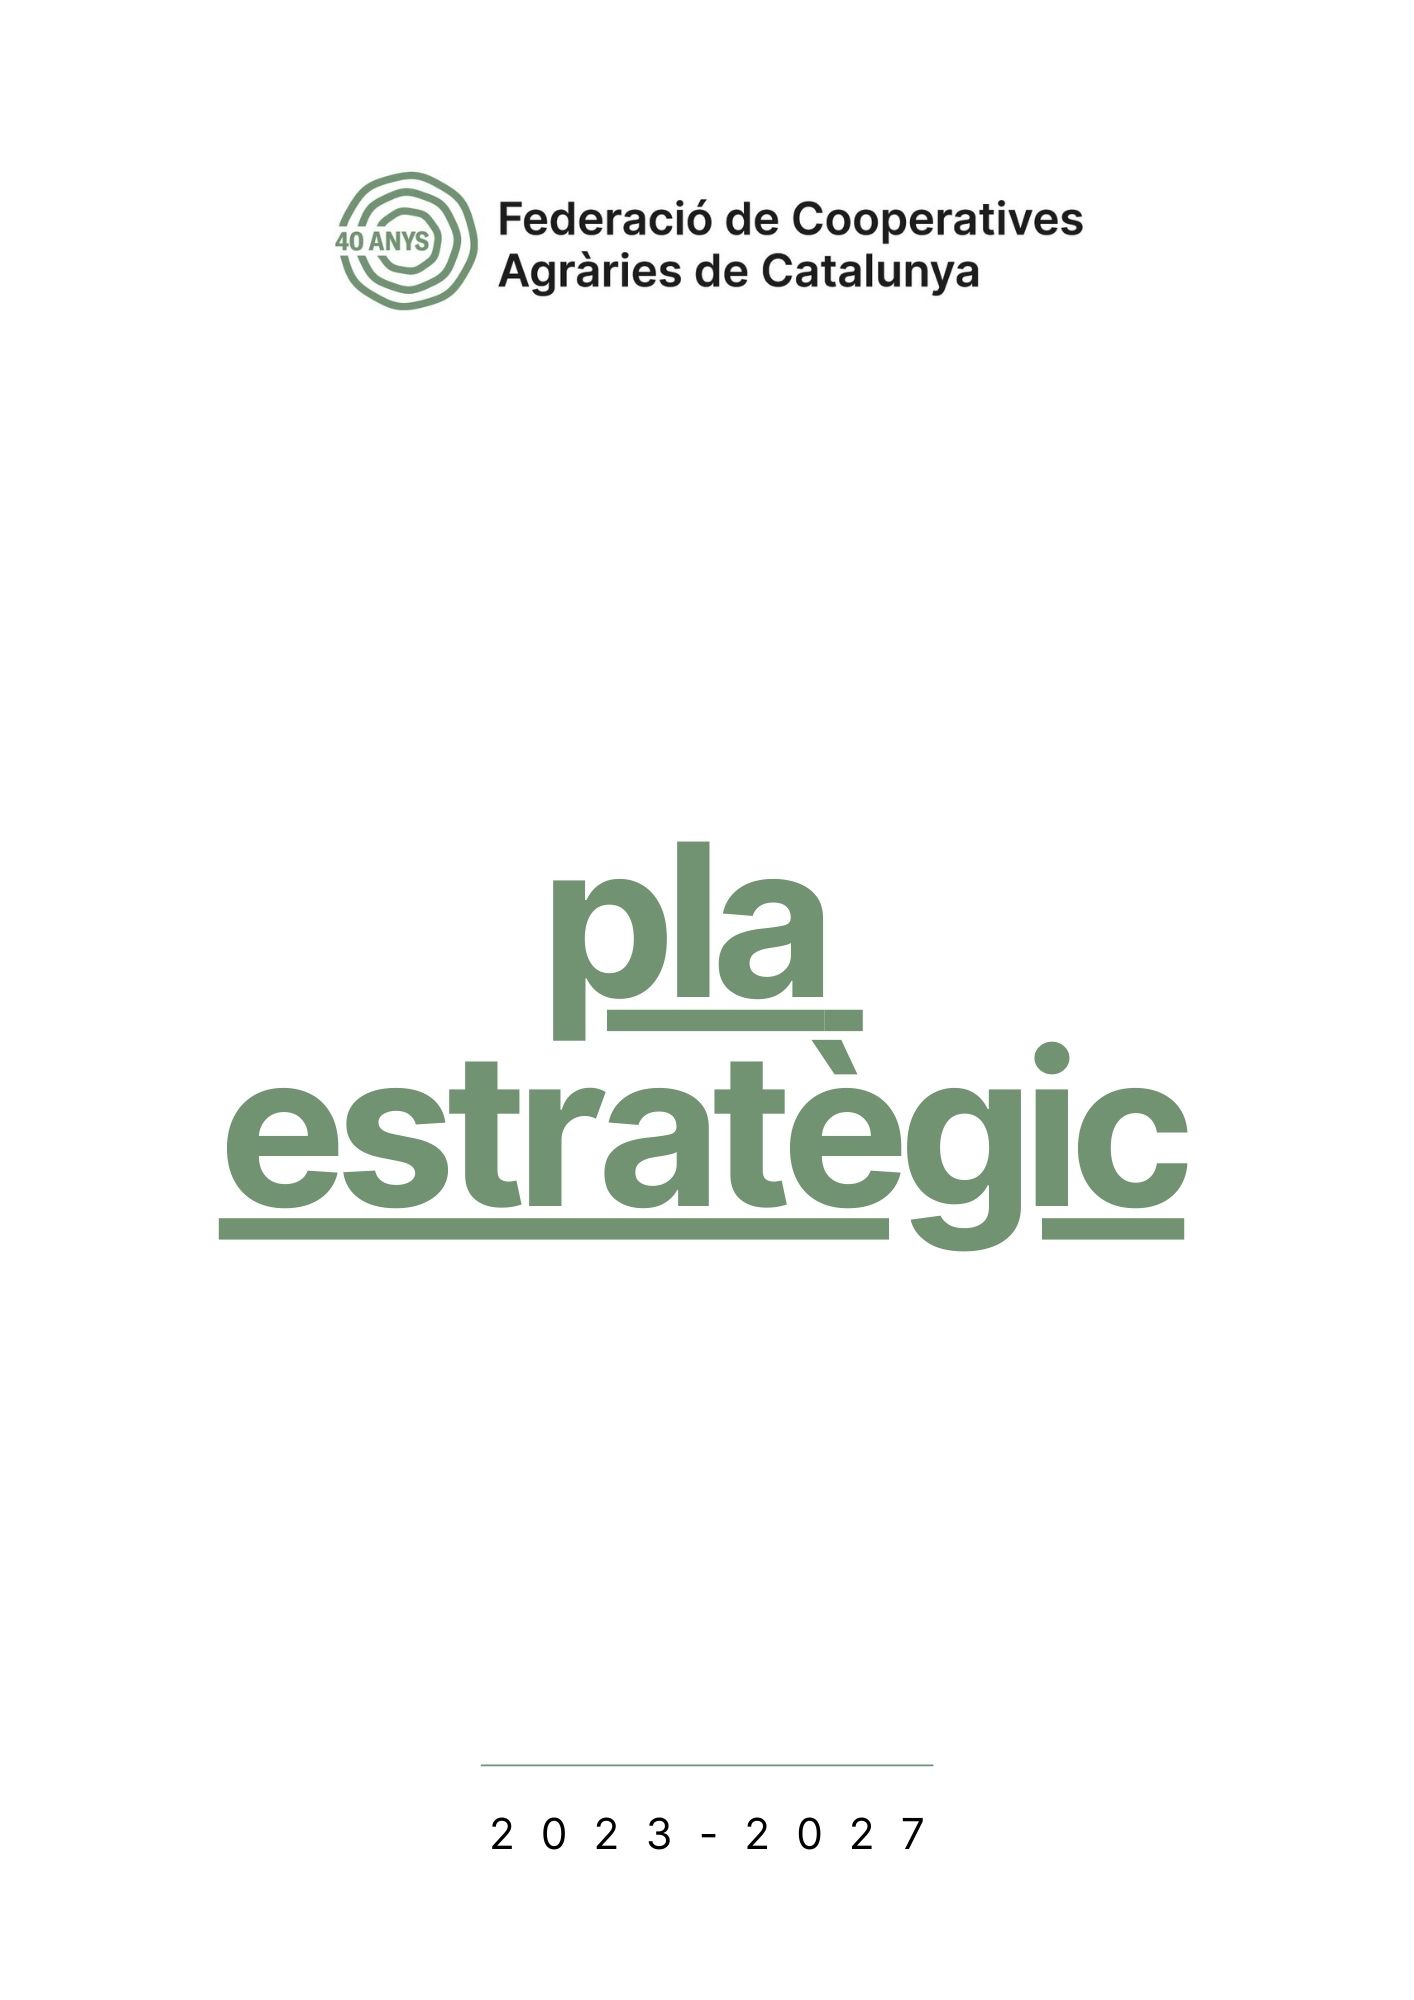 Pla Estratègic 2017-2021